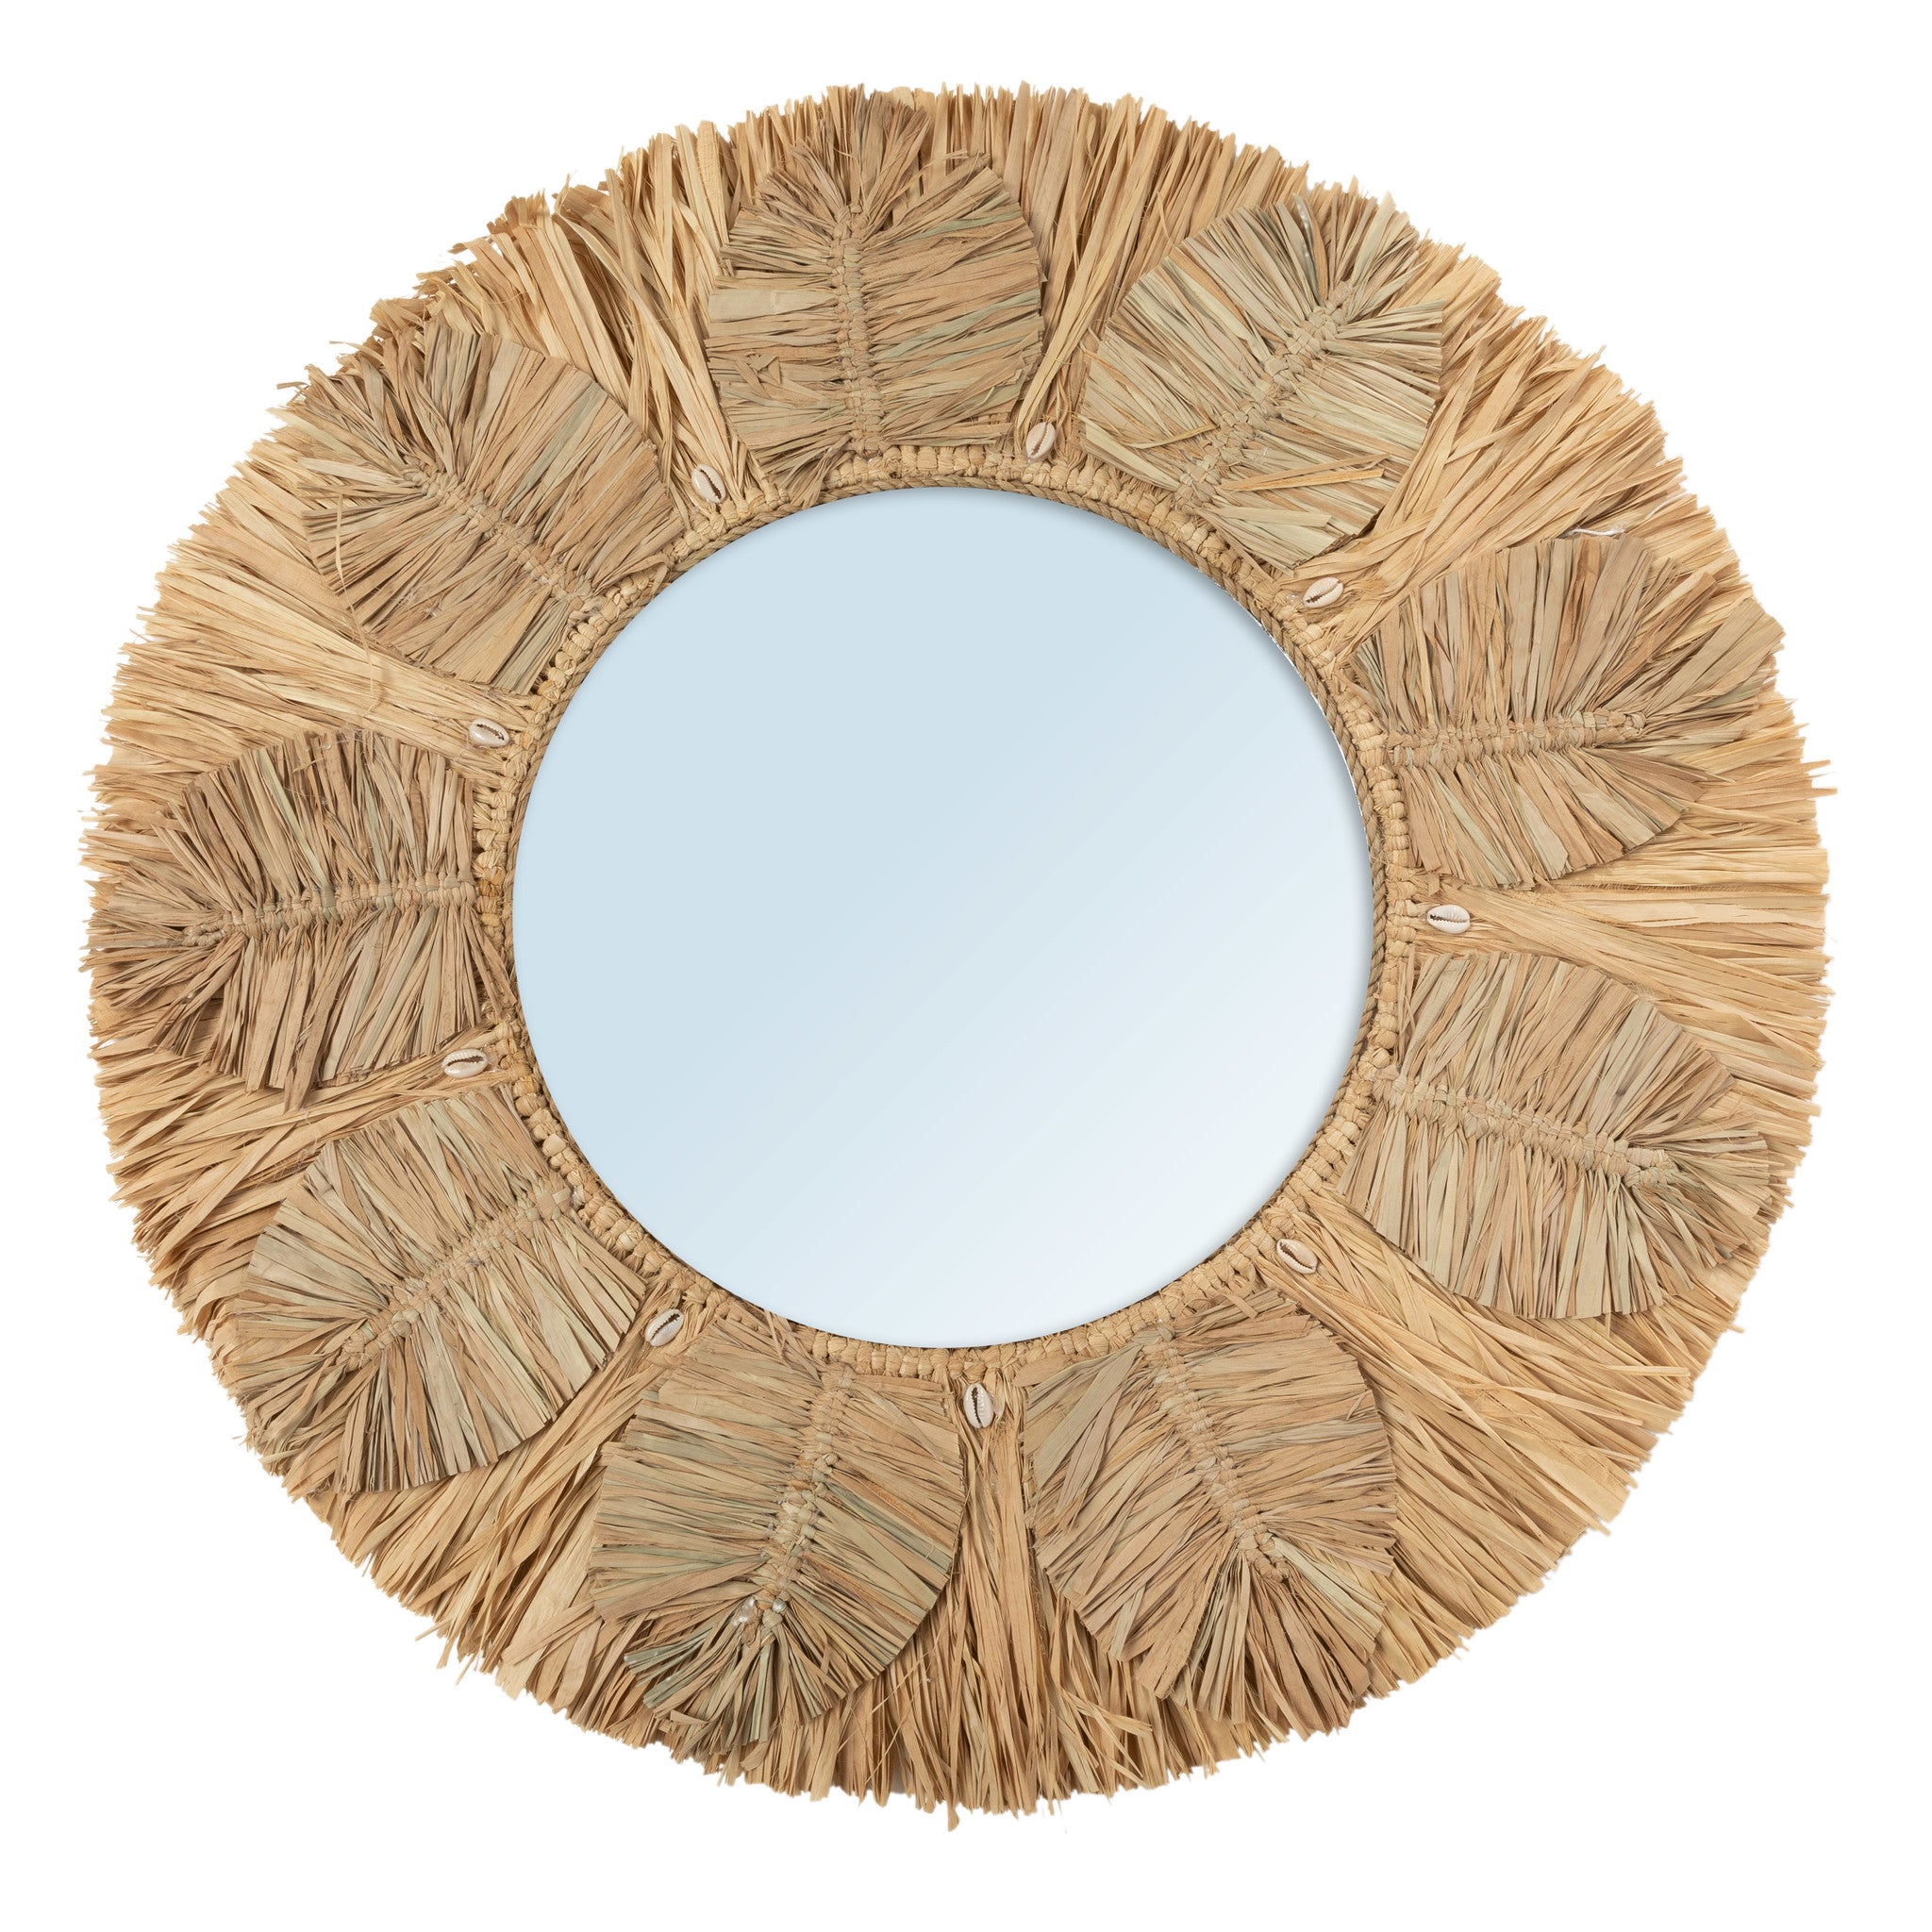 El espejo de la palma - Natural - M